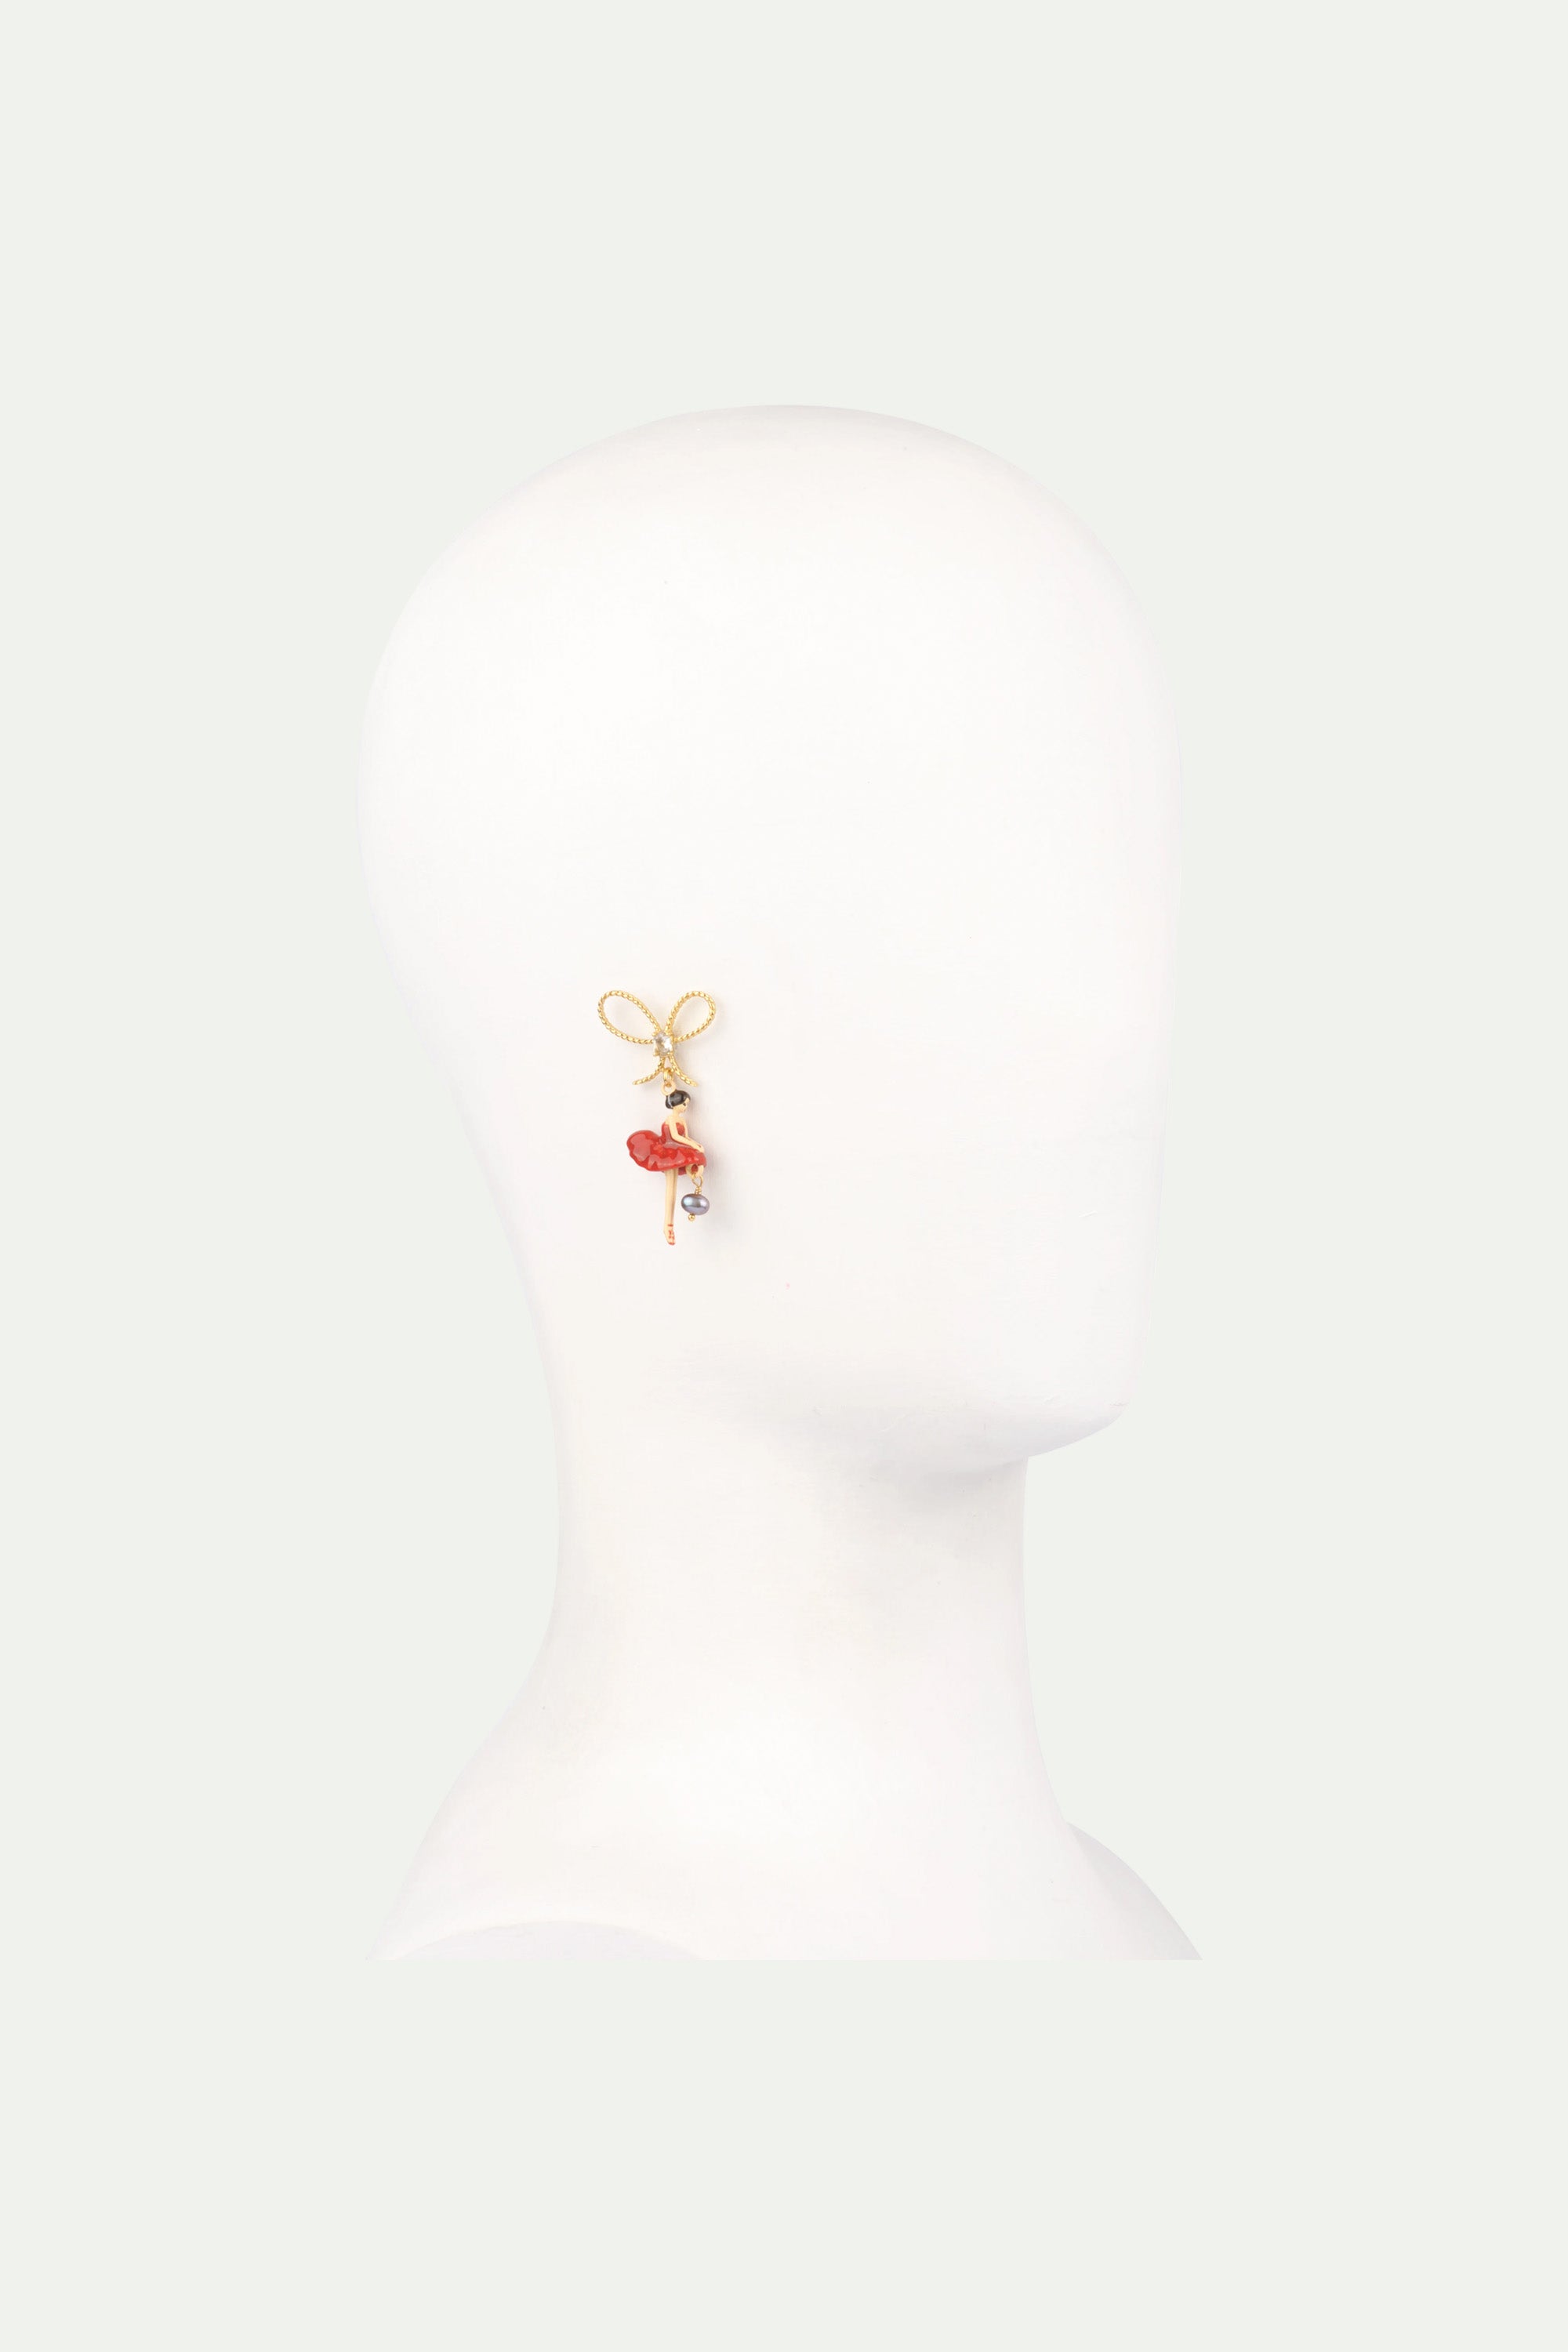 Boucles d'oreilles asymétriques ballerine rouge et noeud